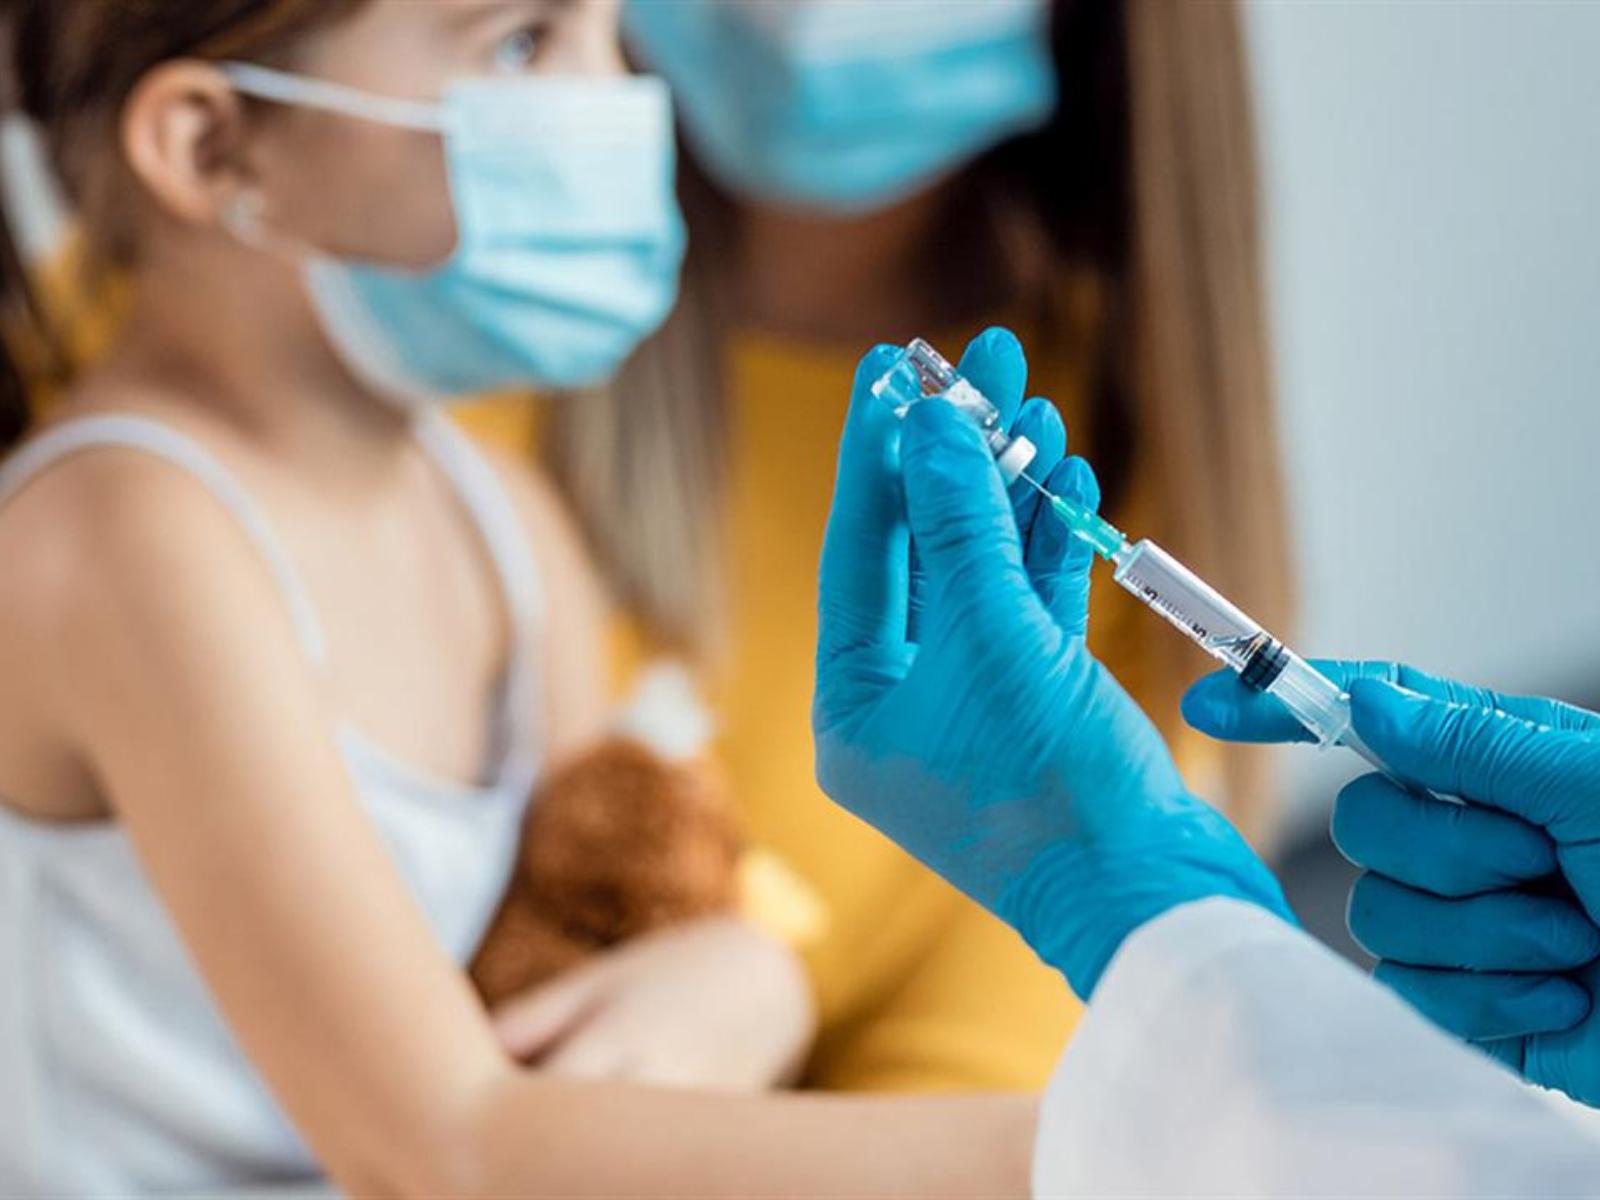 παιδίατροι-προειδοποιούν-σχετικά-με-τον-παιδικό εμβολιασμό-